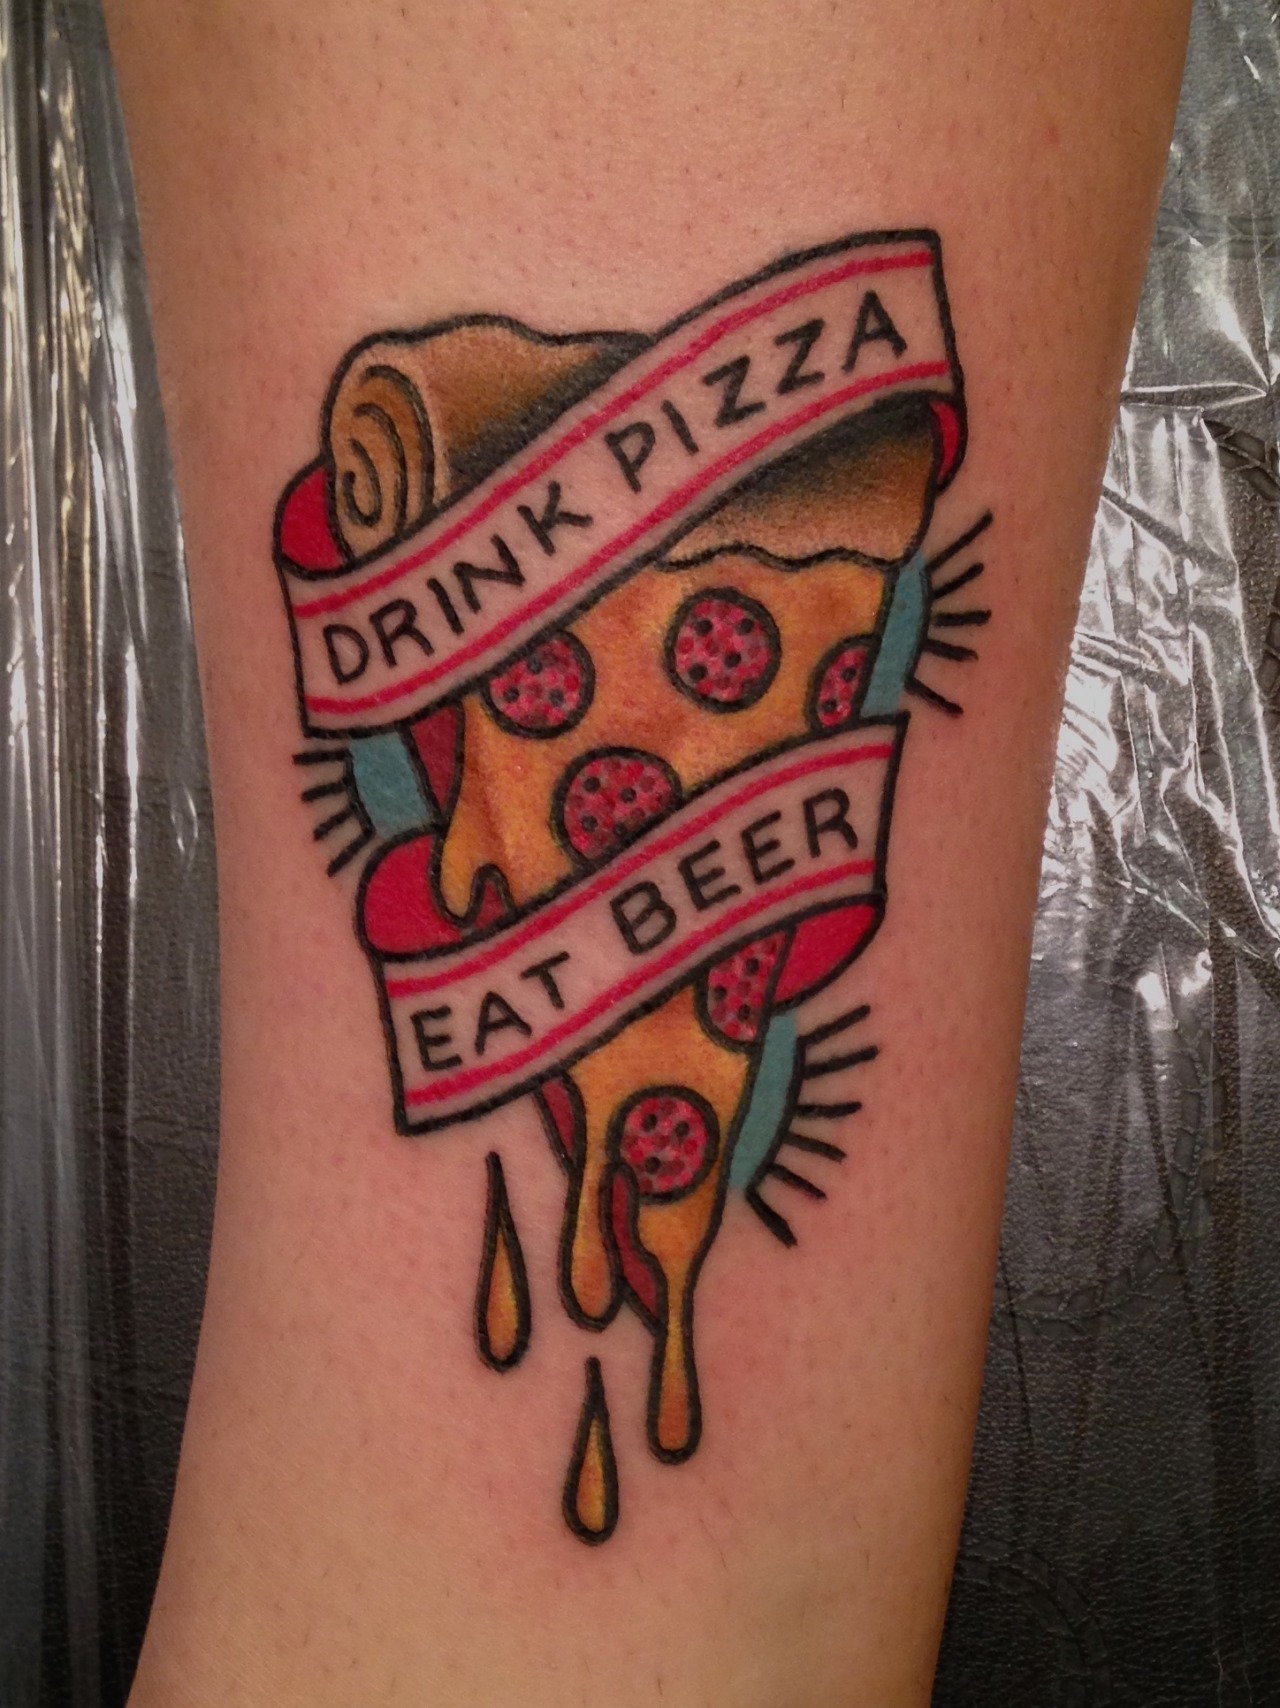 Pizza guy puts a tattoo